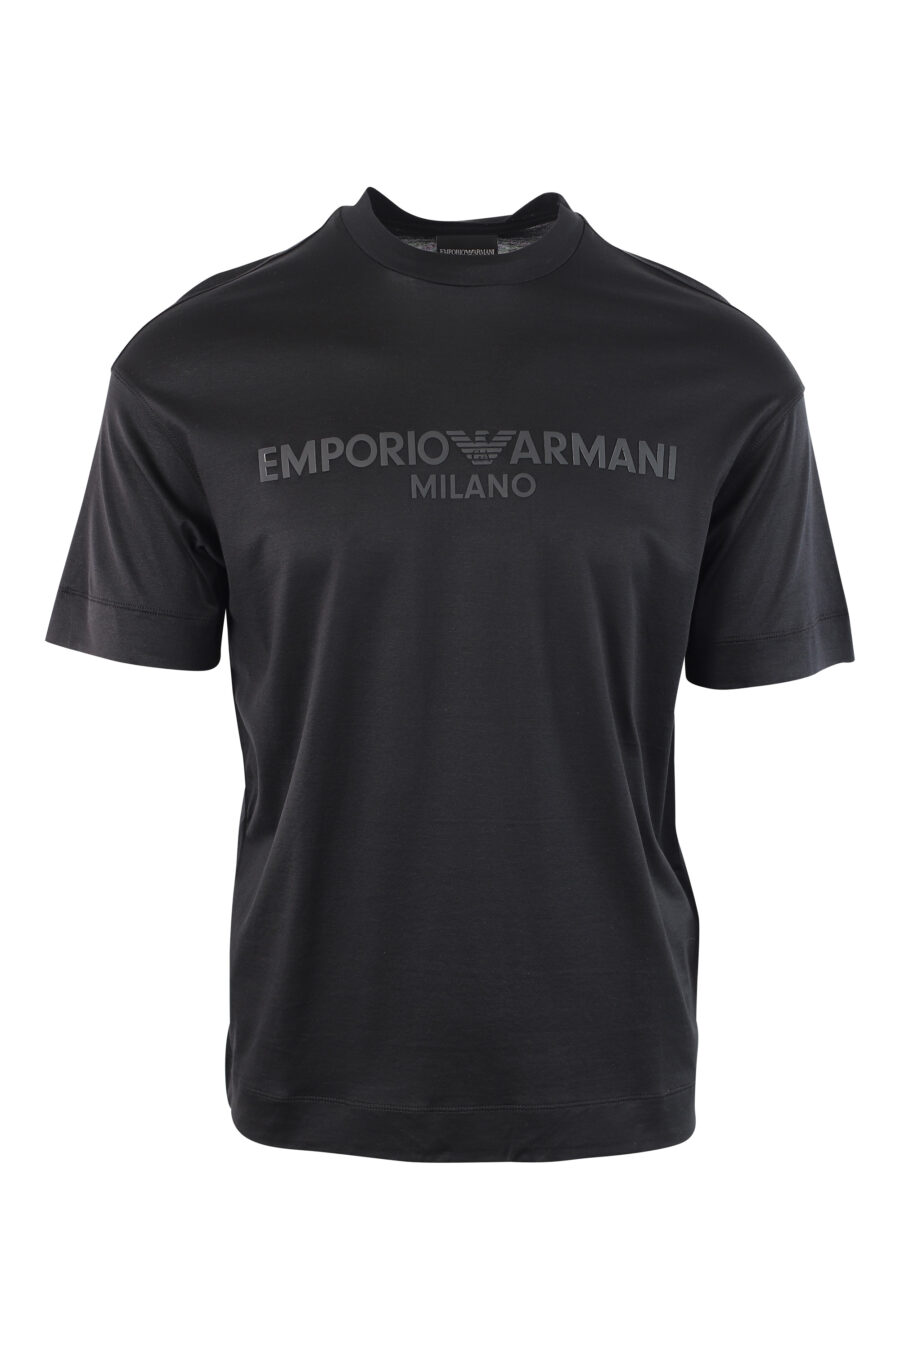 T-shirt noir avec logo monochrome centré - IMG 3785